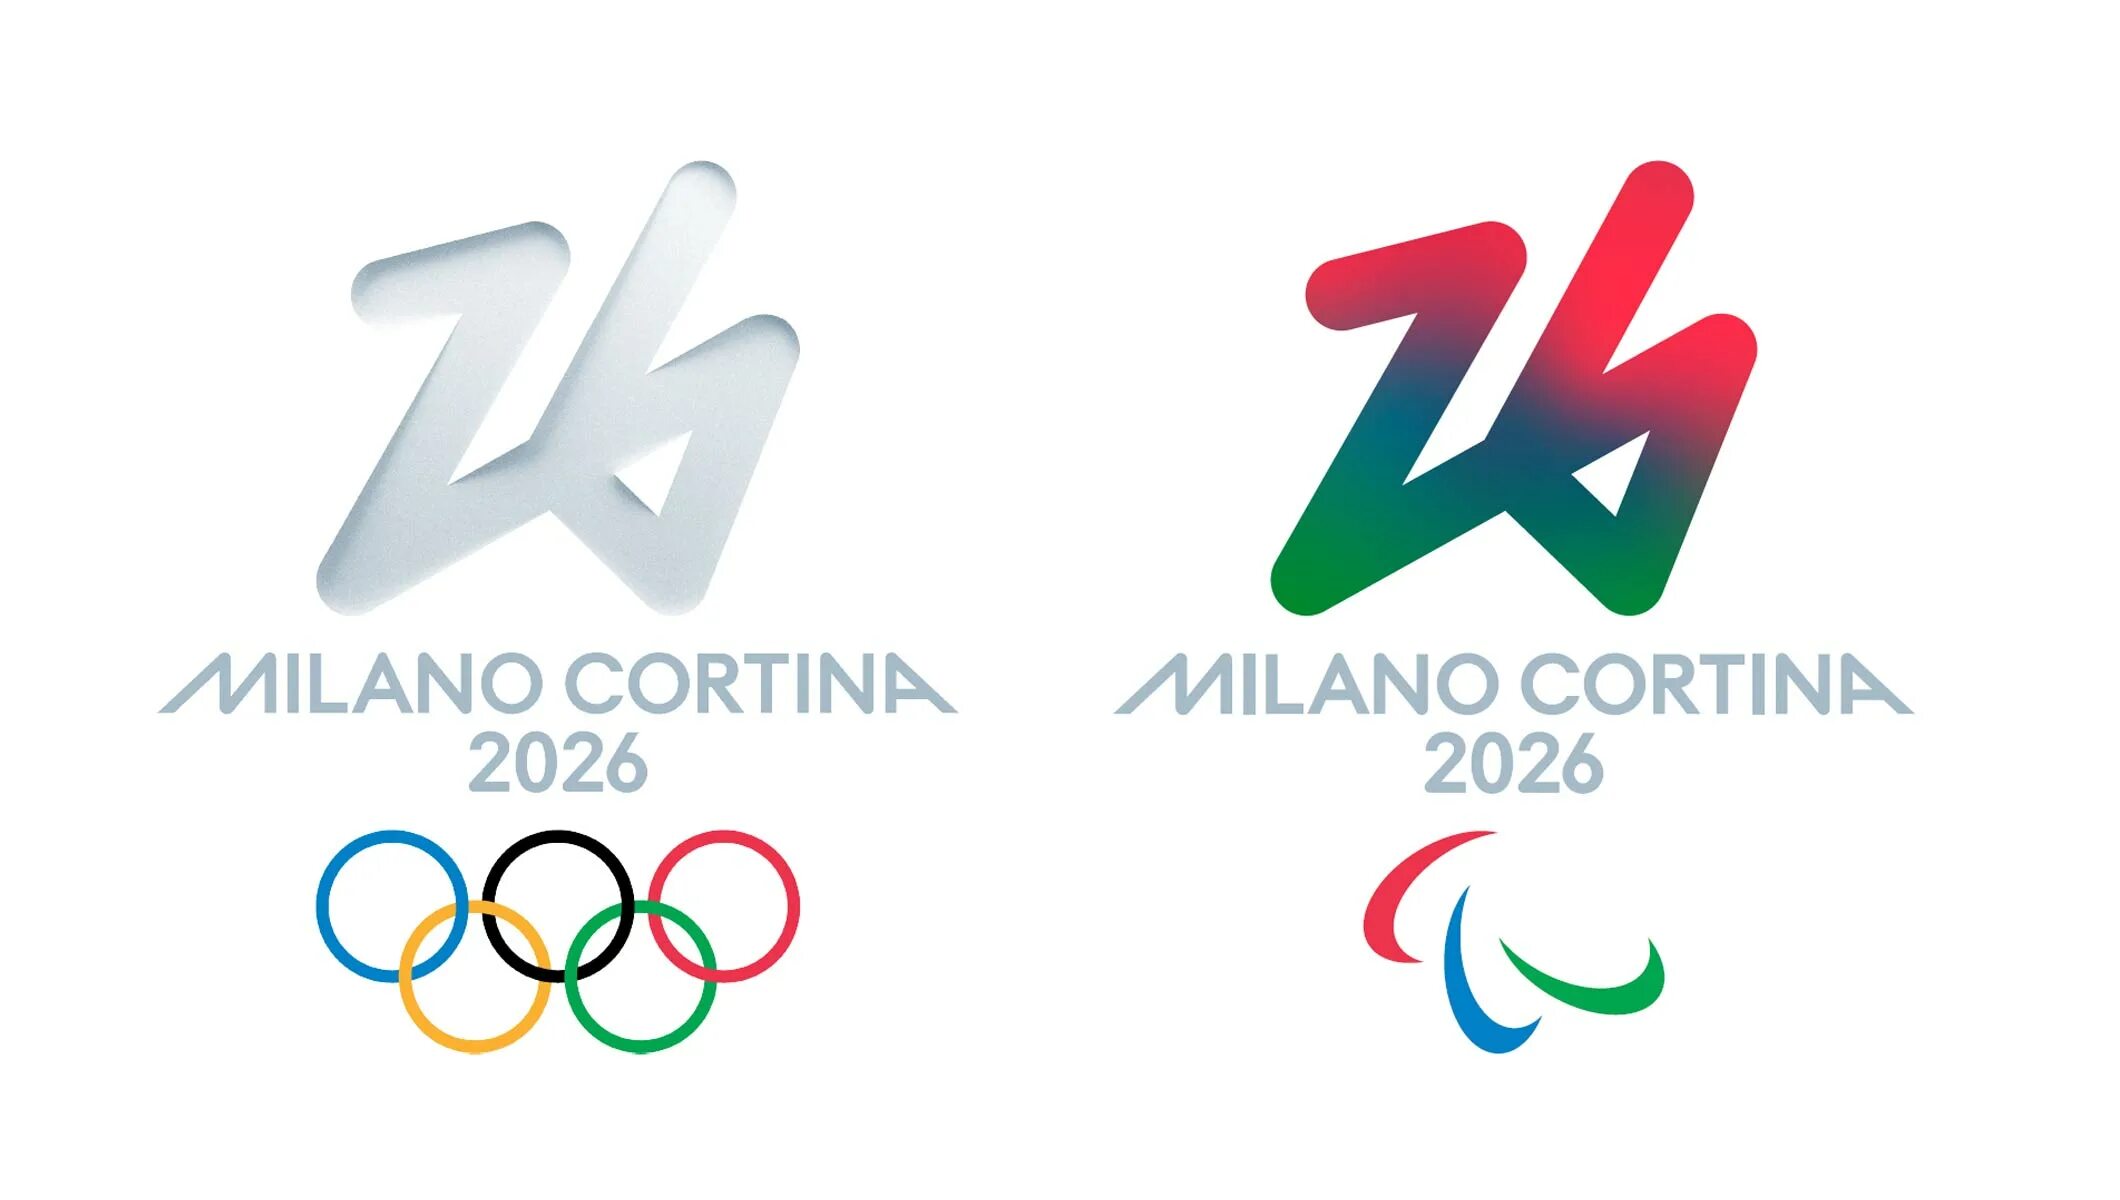 Зимние 2026 где. Зимние Олимпийские игры 2026 года. Эмблема зимних Олимпийских игр 2026 года. Зимние Паралимпийские игры 2026. Символ олимпиады в Милане 2026.